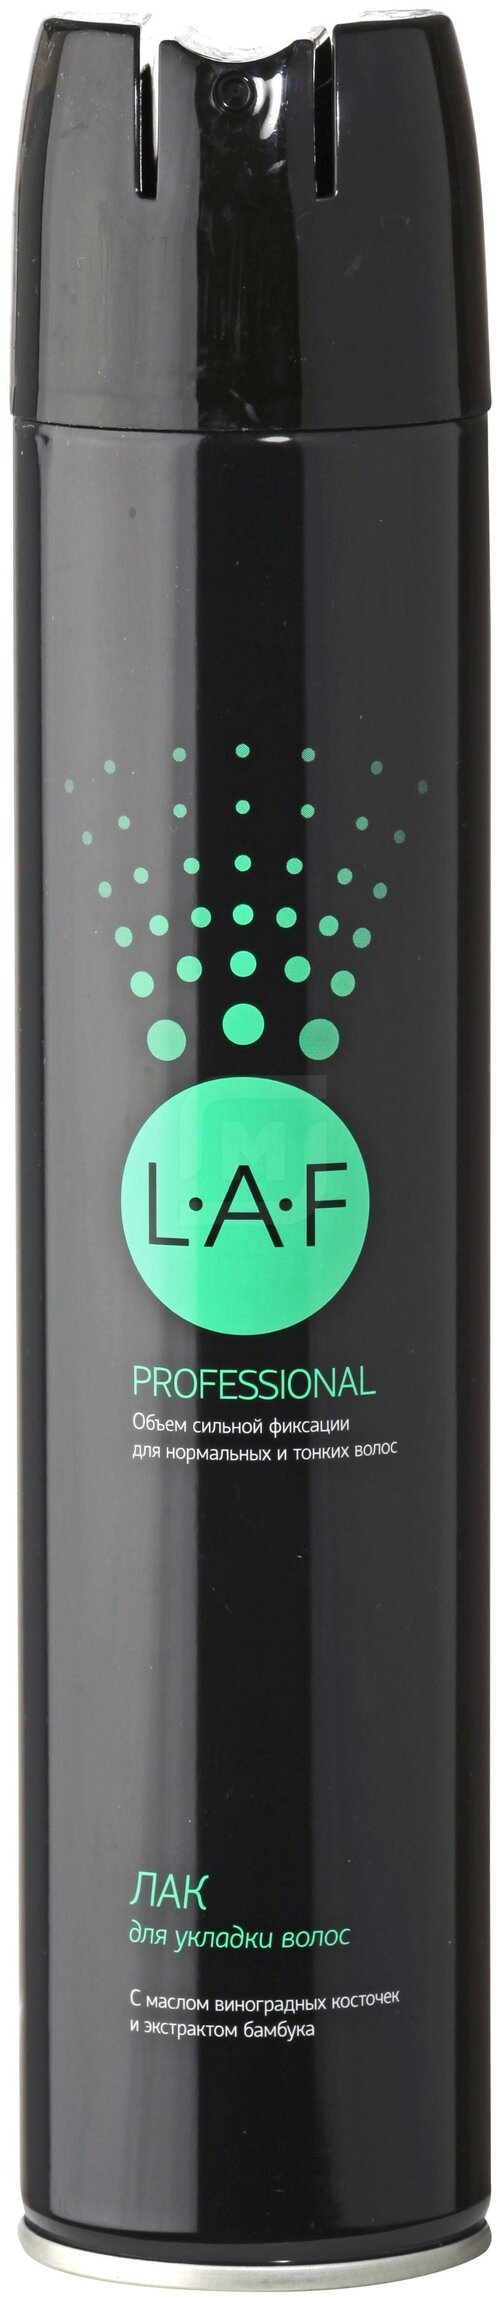 LAF Professional, 300 мл